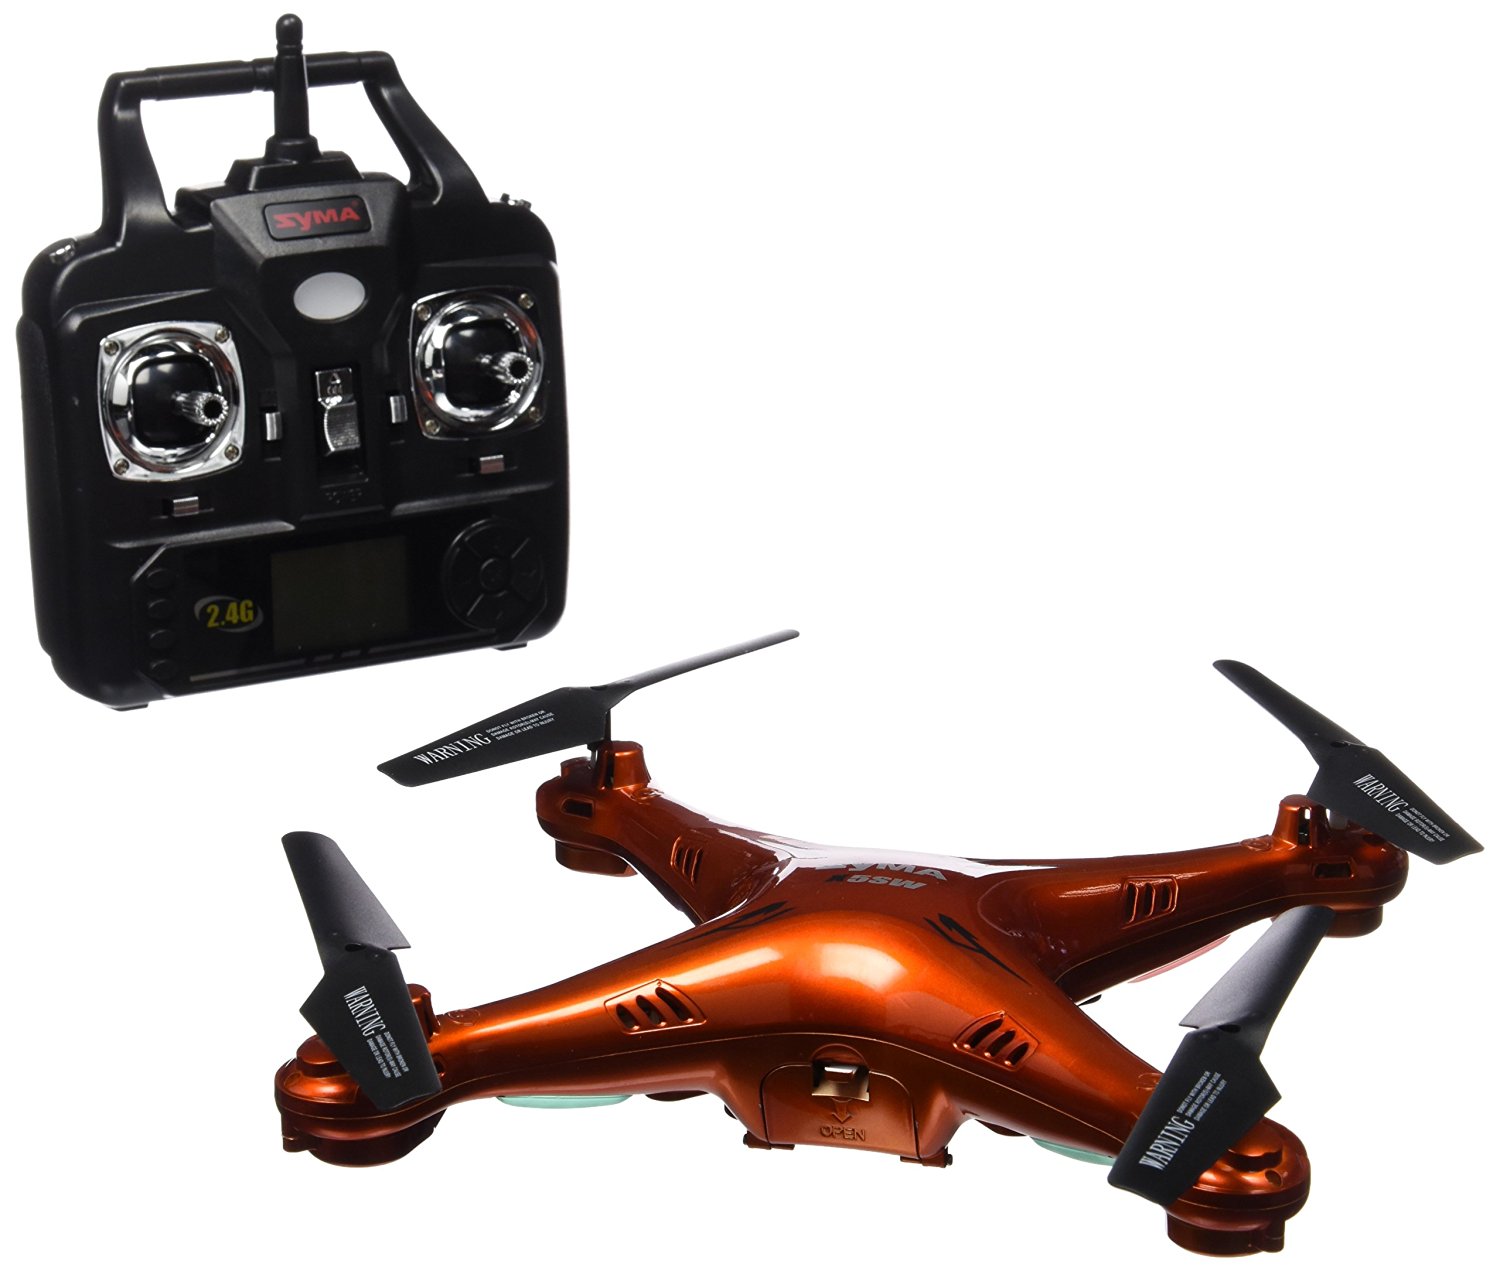 Syma X5SW-1 -Los mejores drones y los más baratos - Especial de Gizlogic